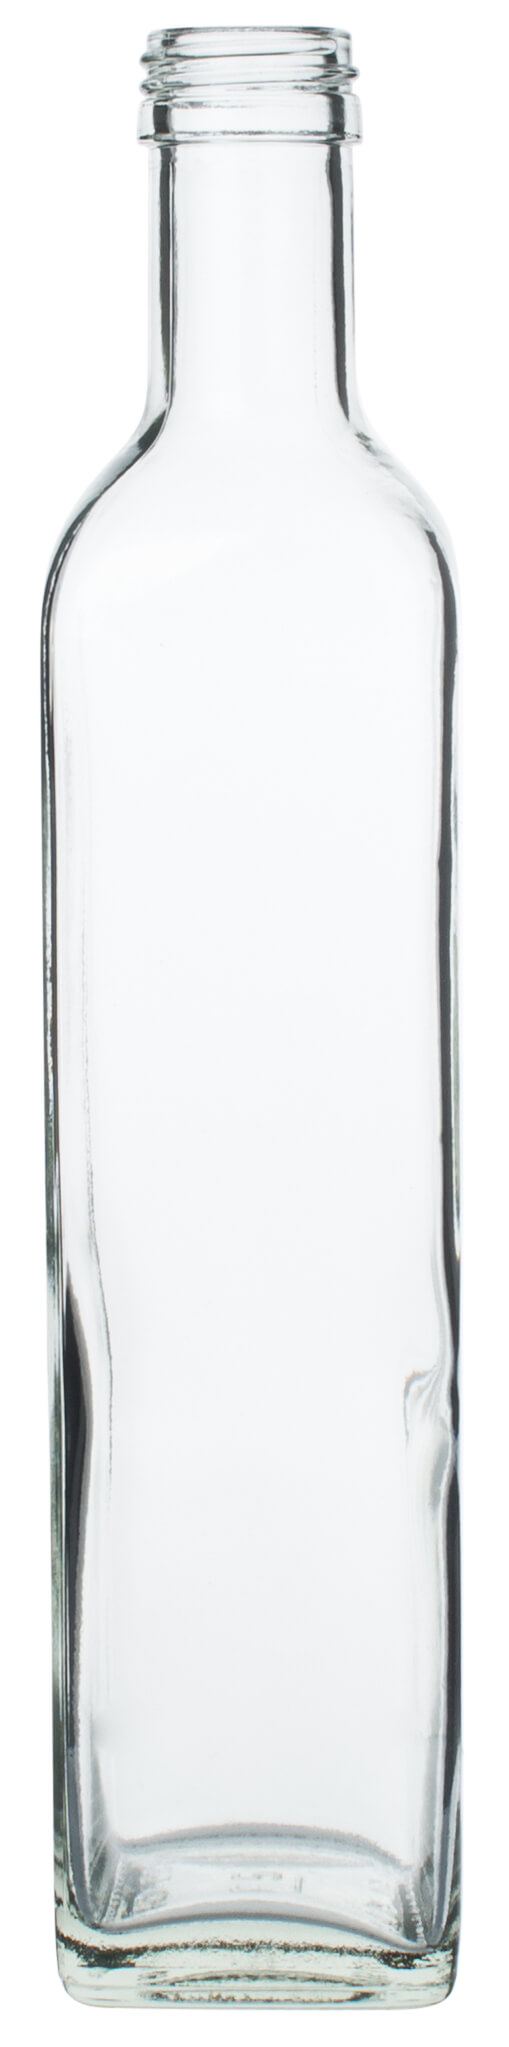 Glasflasche eckig - 500ml